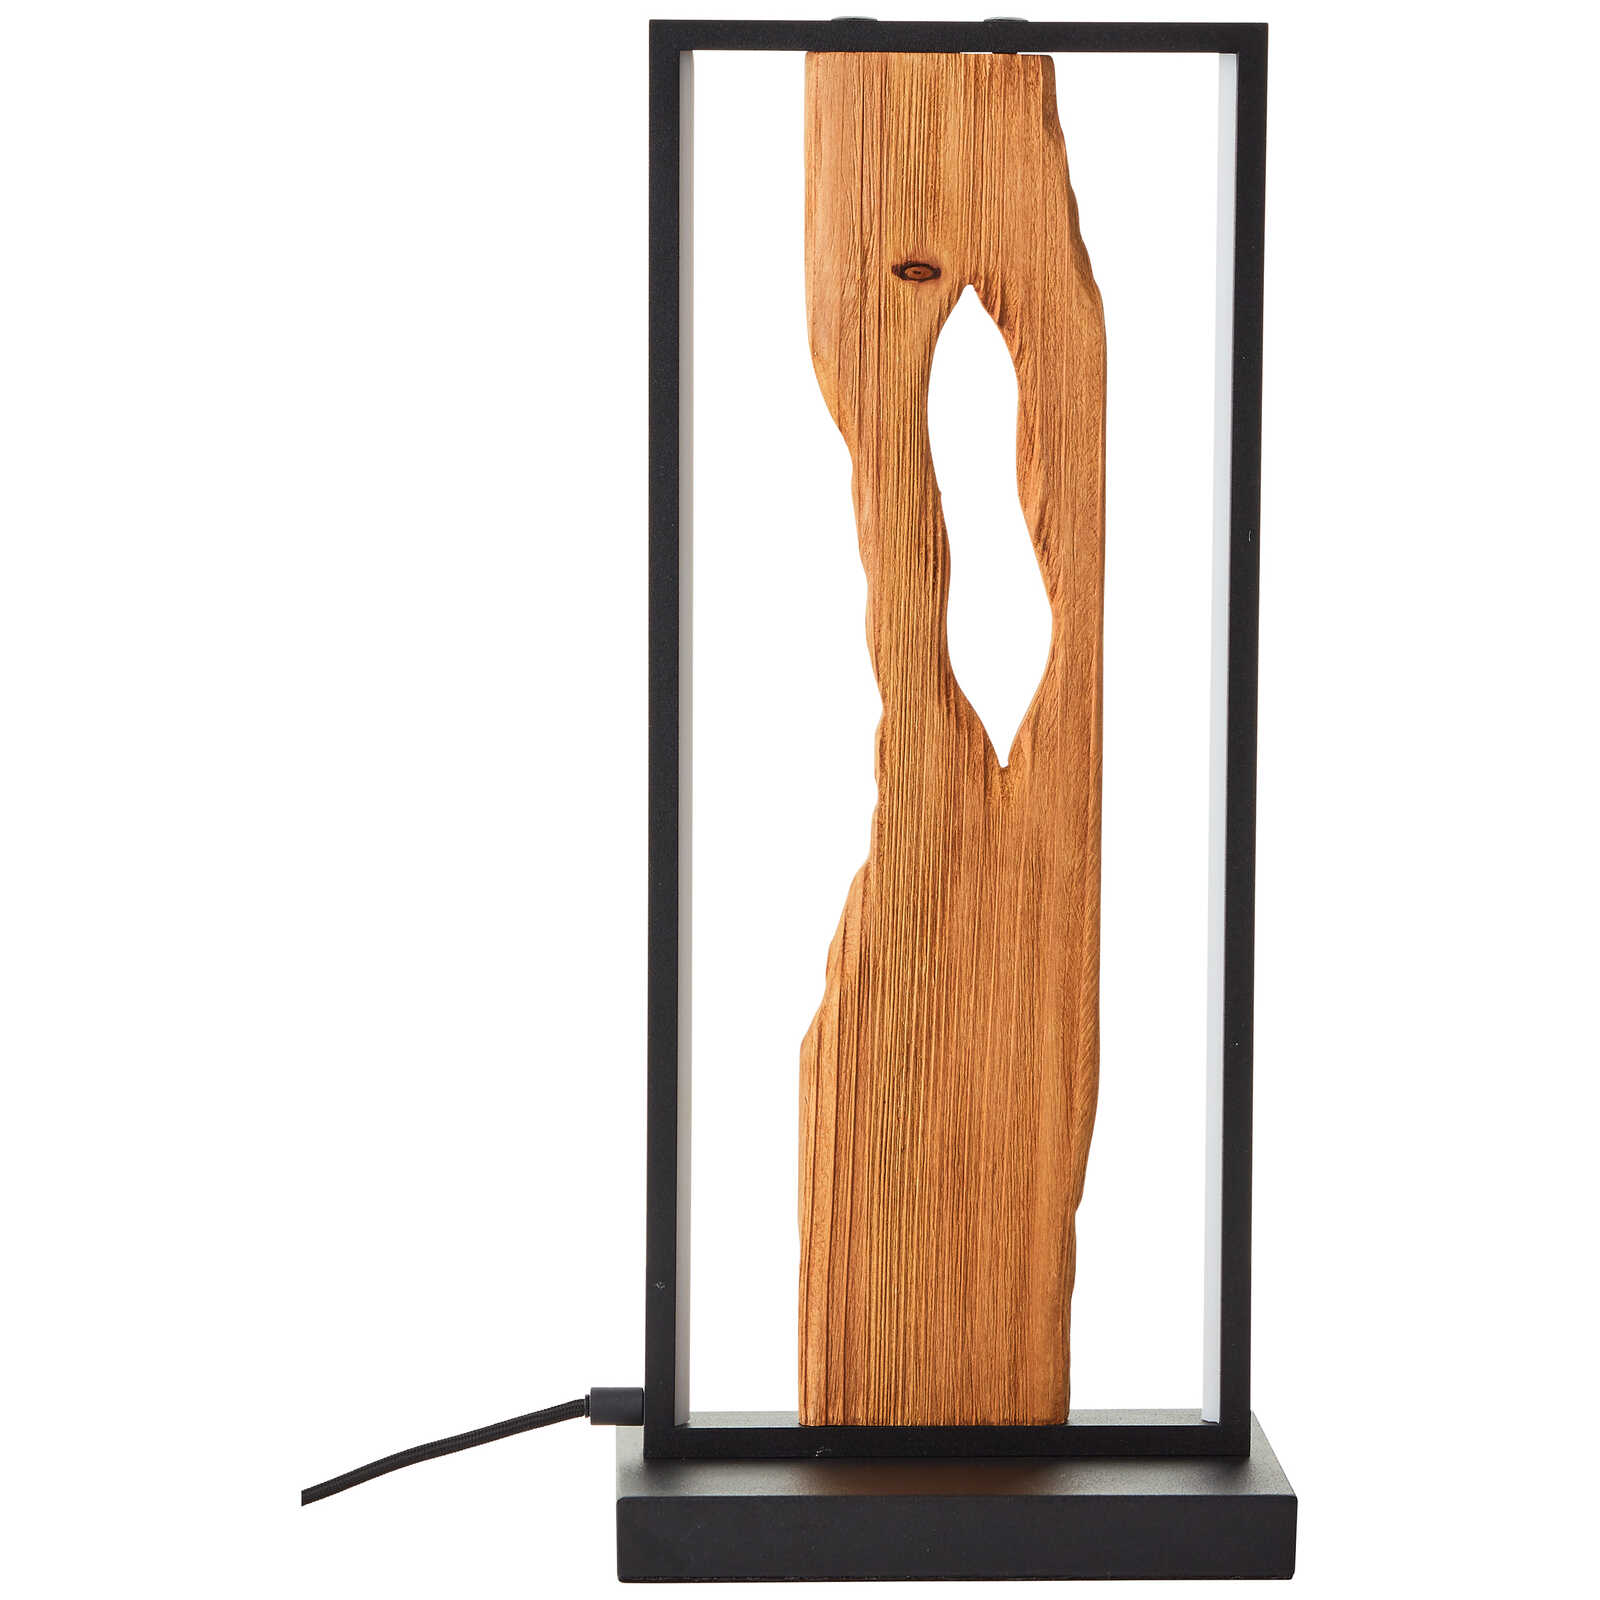             Lámpara de mesa de madera - Elea 3 - Marrón
        